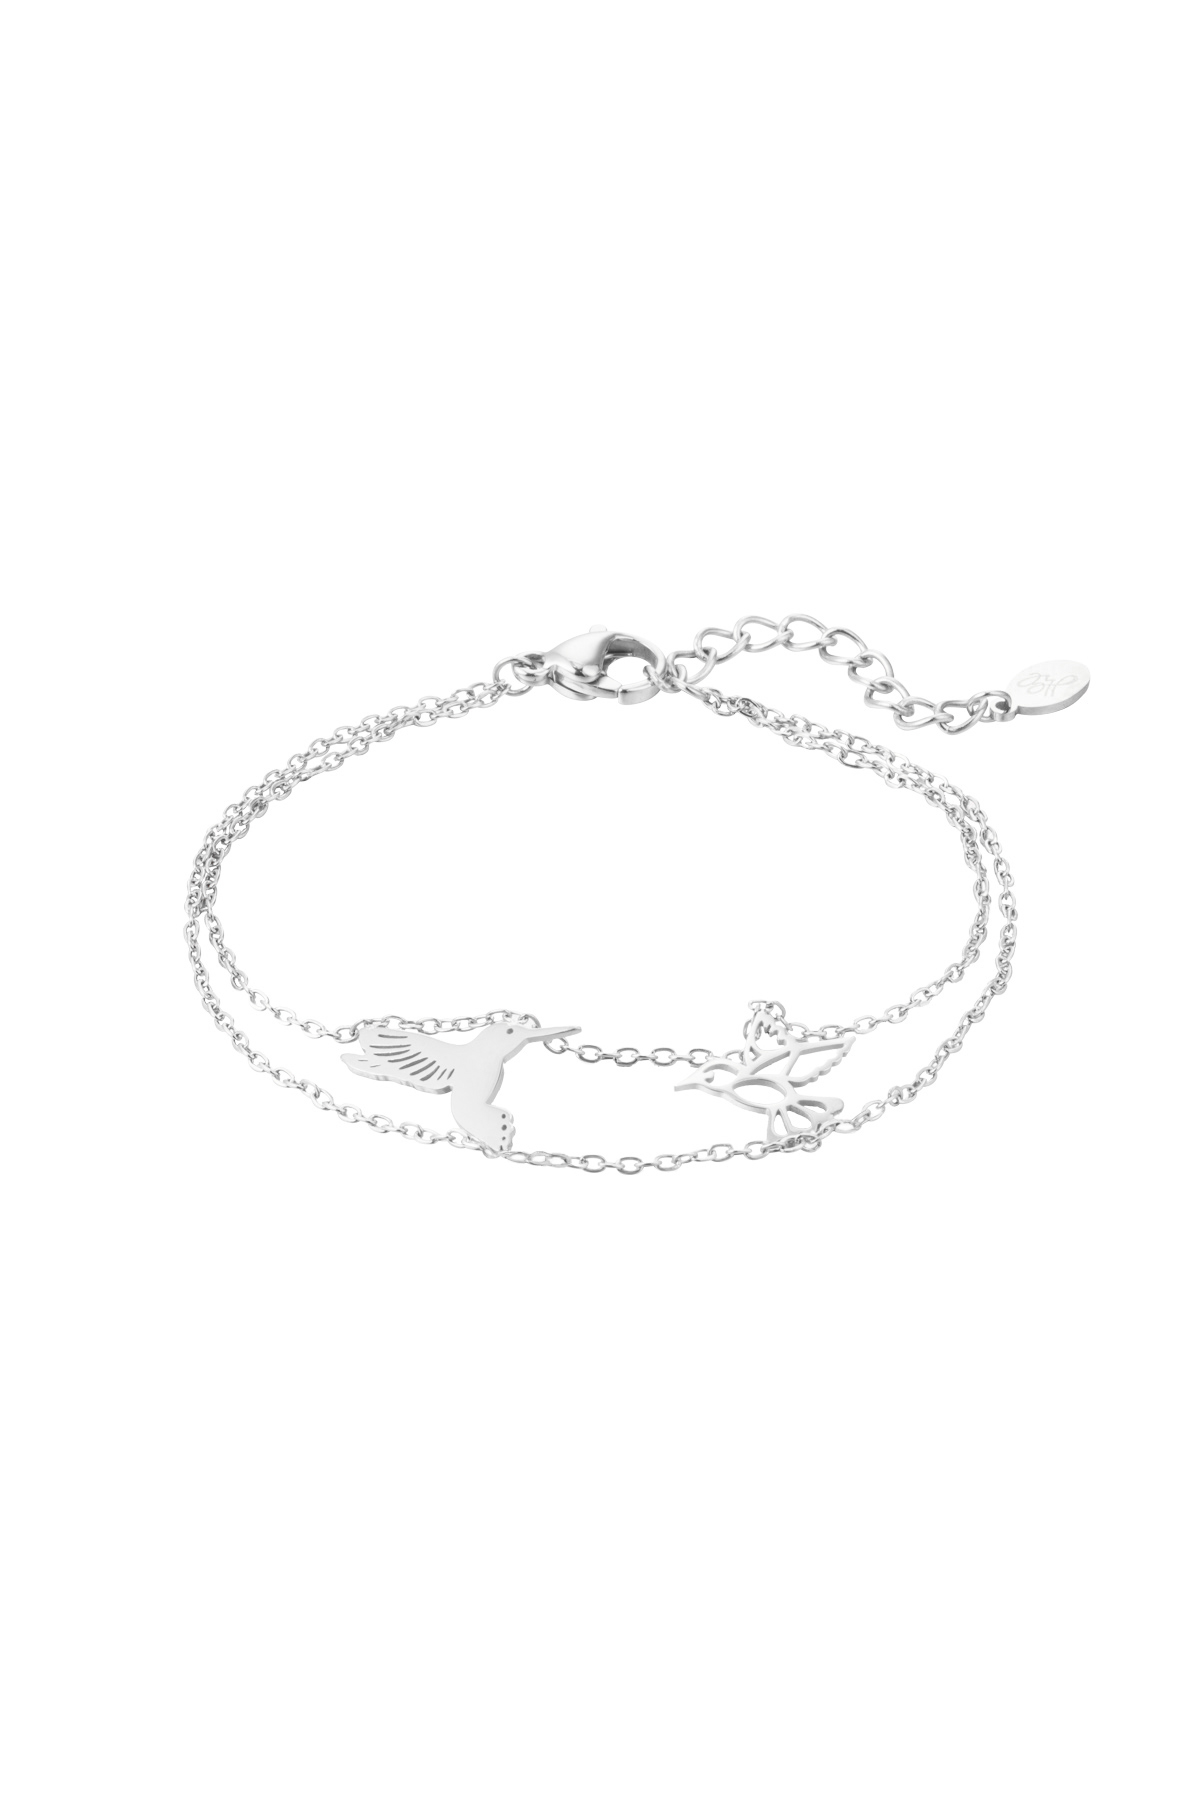 Bracelet 2 birds - silver